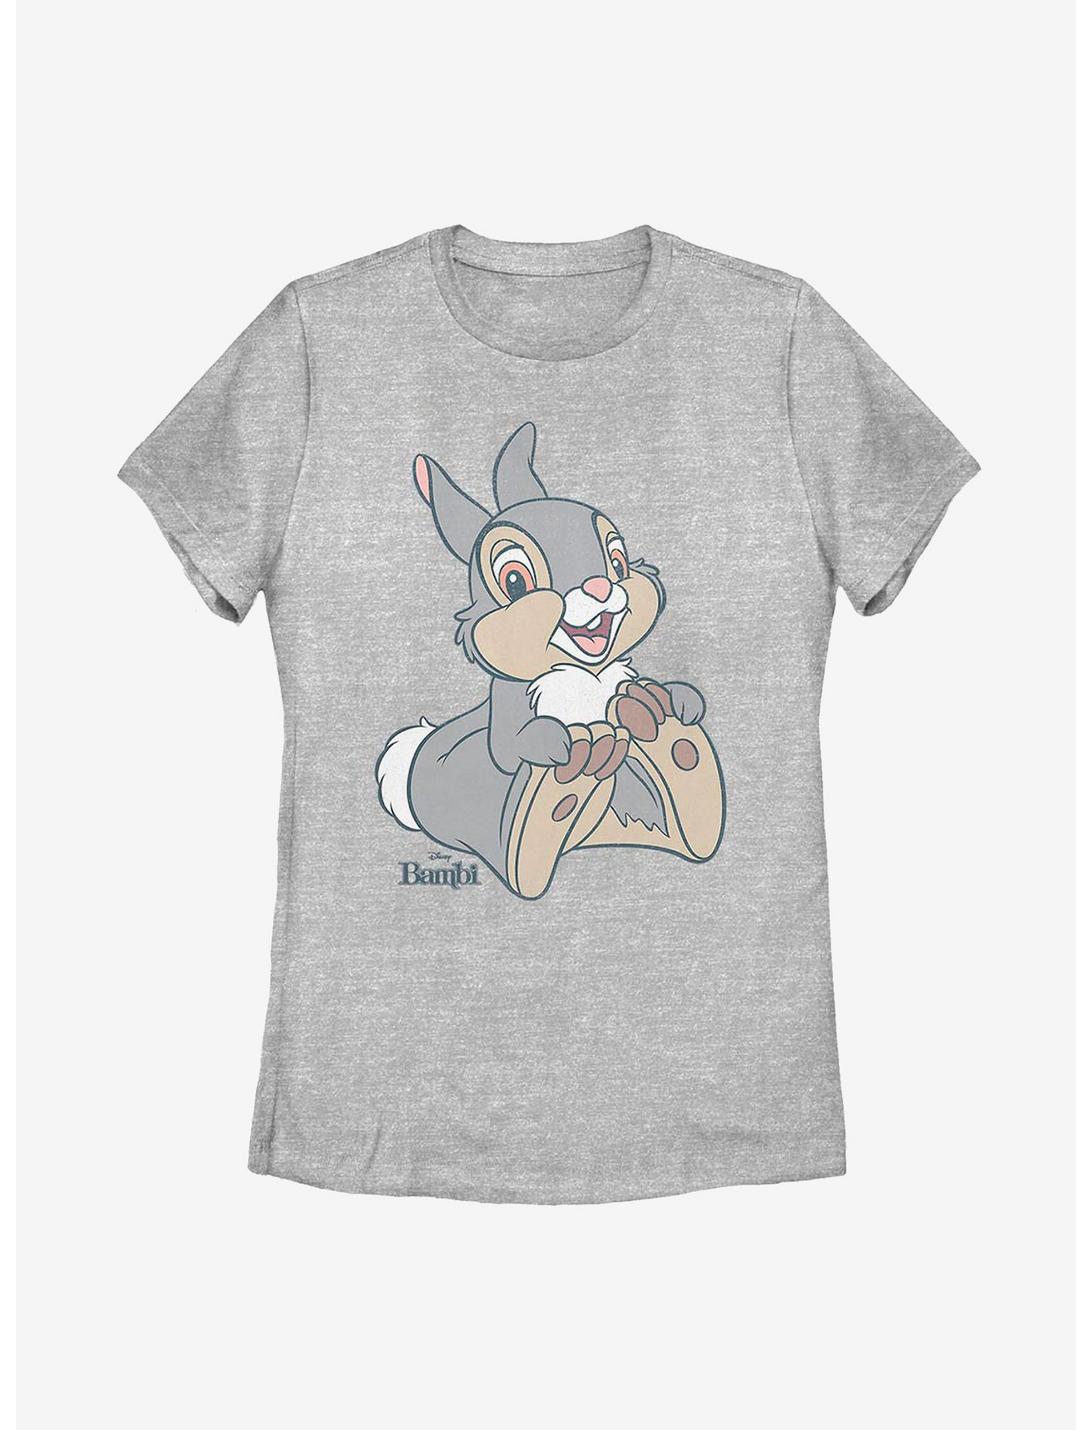 Disney Bambi Big Thumper Womens T-Shirt, ATH HTR, hi-res